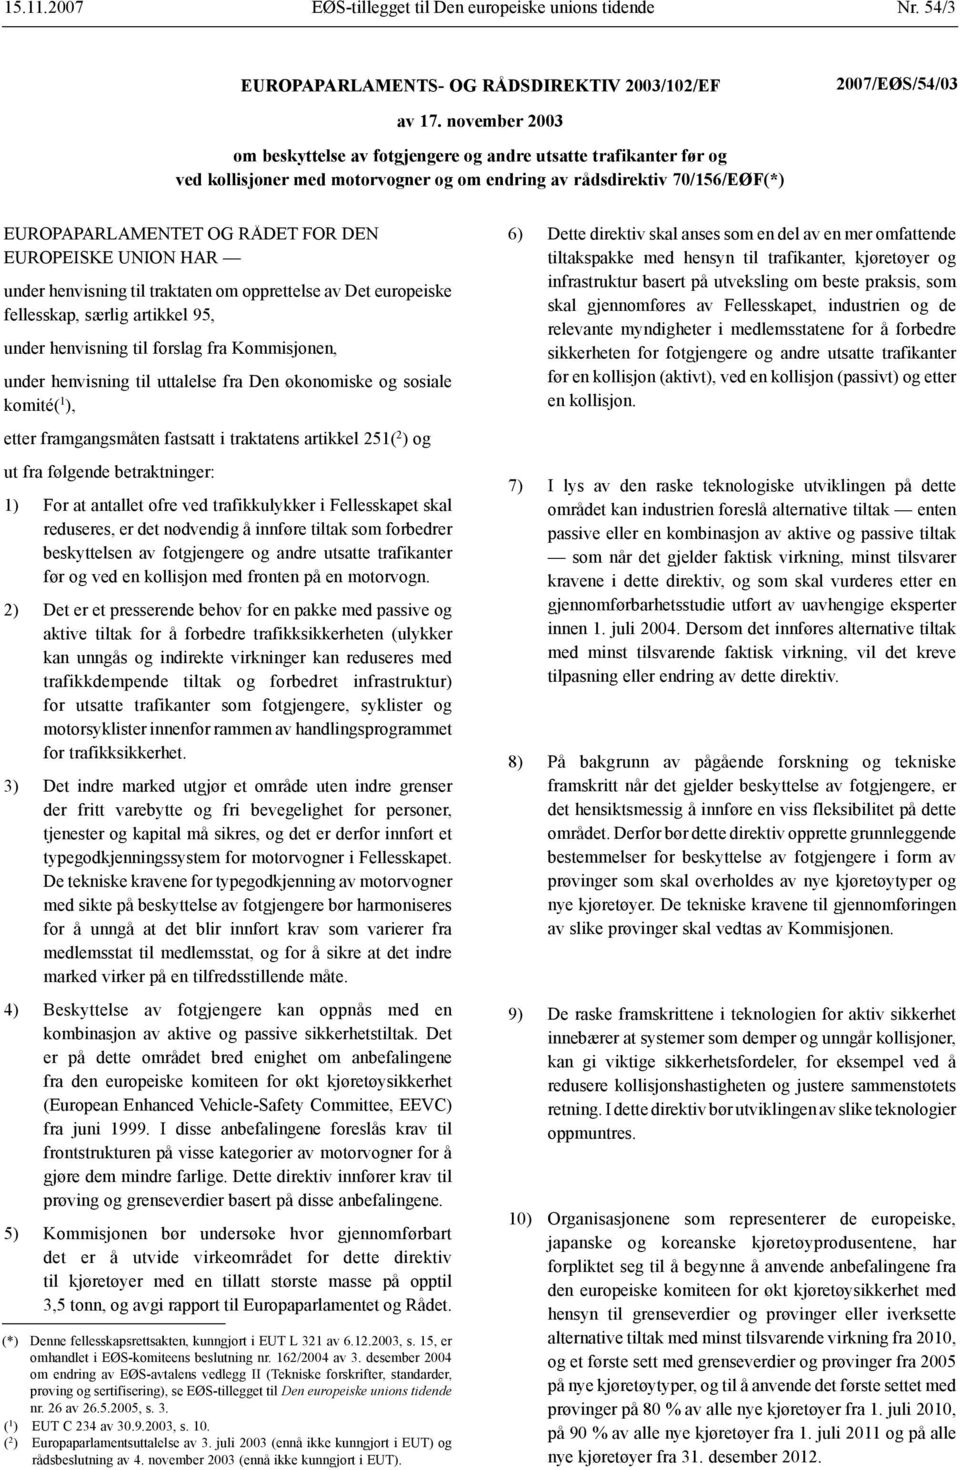 EUROPEISKE UNION HAR under henvisning til traktaten om opprettelse av Det europeiske fellesskap, særlig artikkel 95, under henvisning til forslag fra Kommisjonen, under henvisning til uttalelse fra